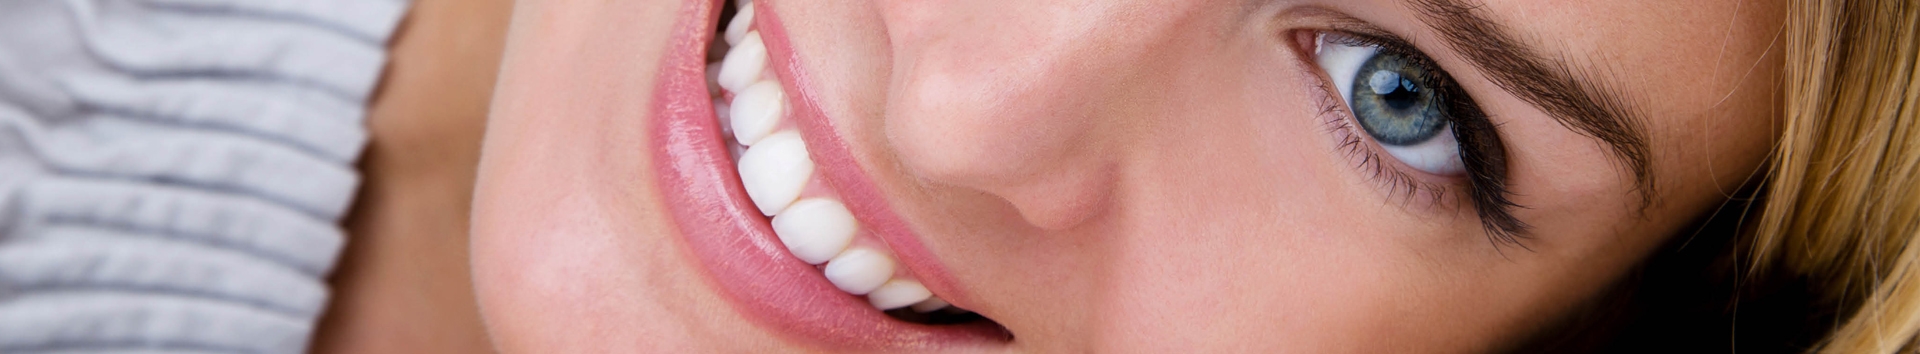 5 hábitos no verão para dentes mais brancos e saudáveis